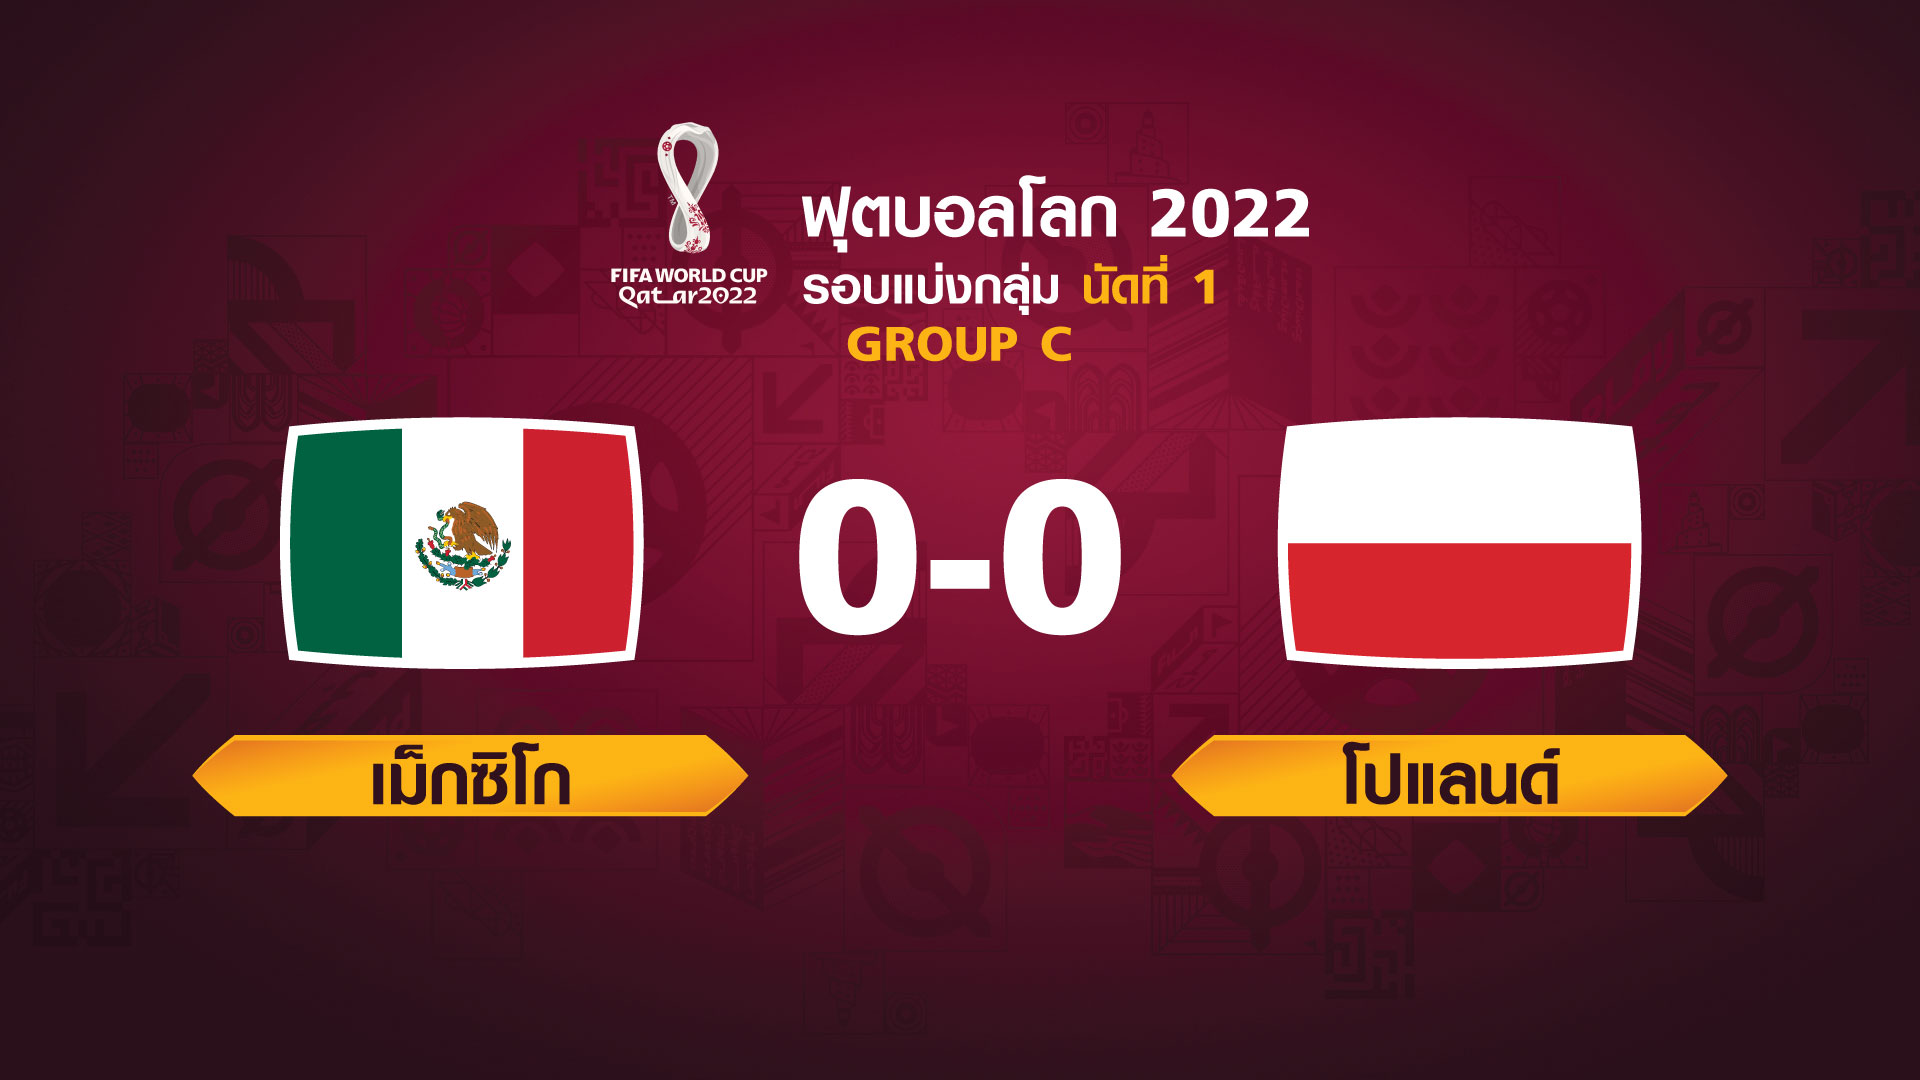 ฟุตบอลโลก 2022 รอบแบ่งกลุ่ม นัดแรก ระหว่าง Mexico vs Poland